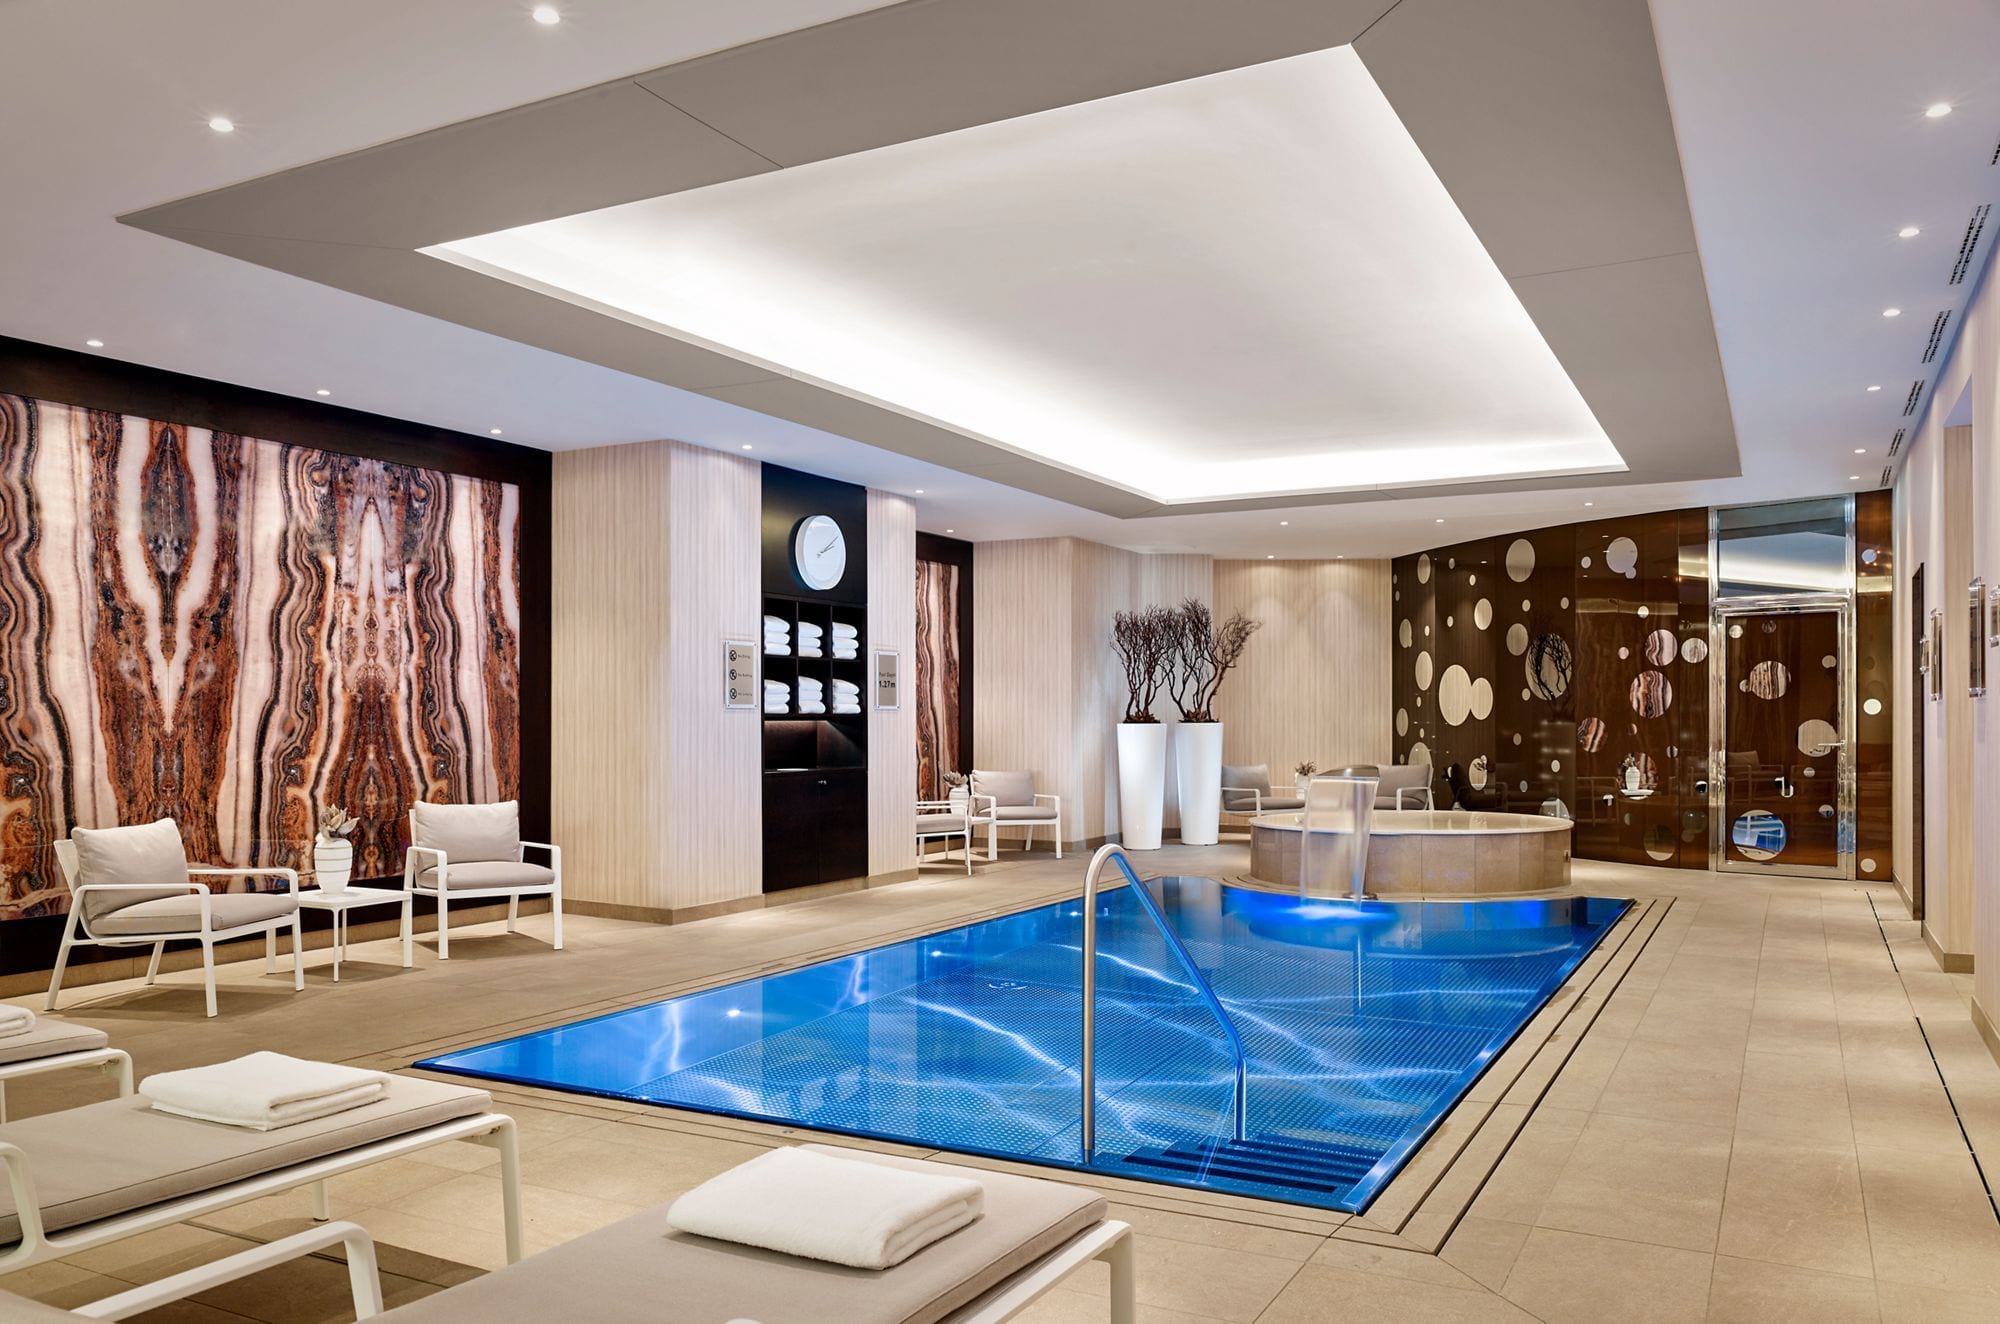 Überlauf-Schwimmbecken IMAGINOX im Hotel Ritz Carlton in Berlin